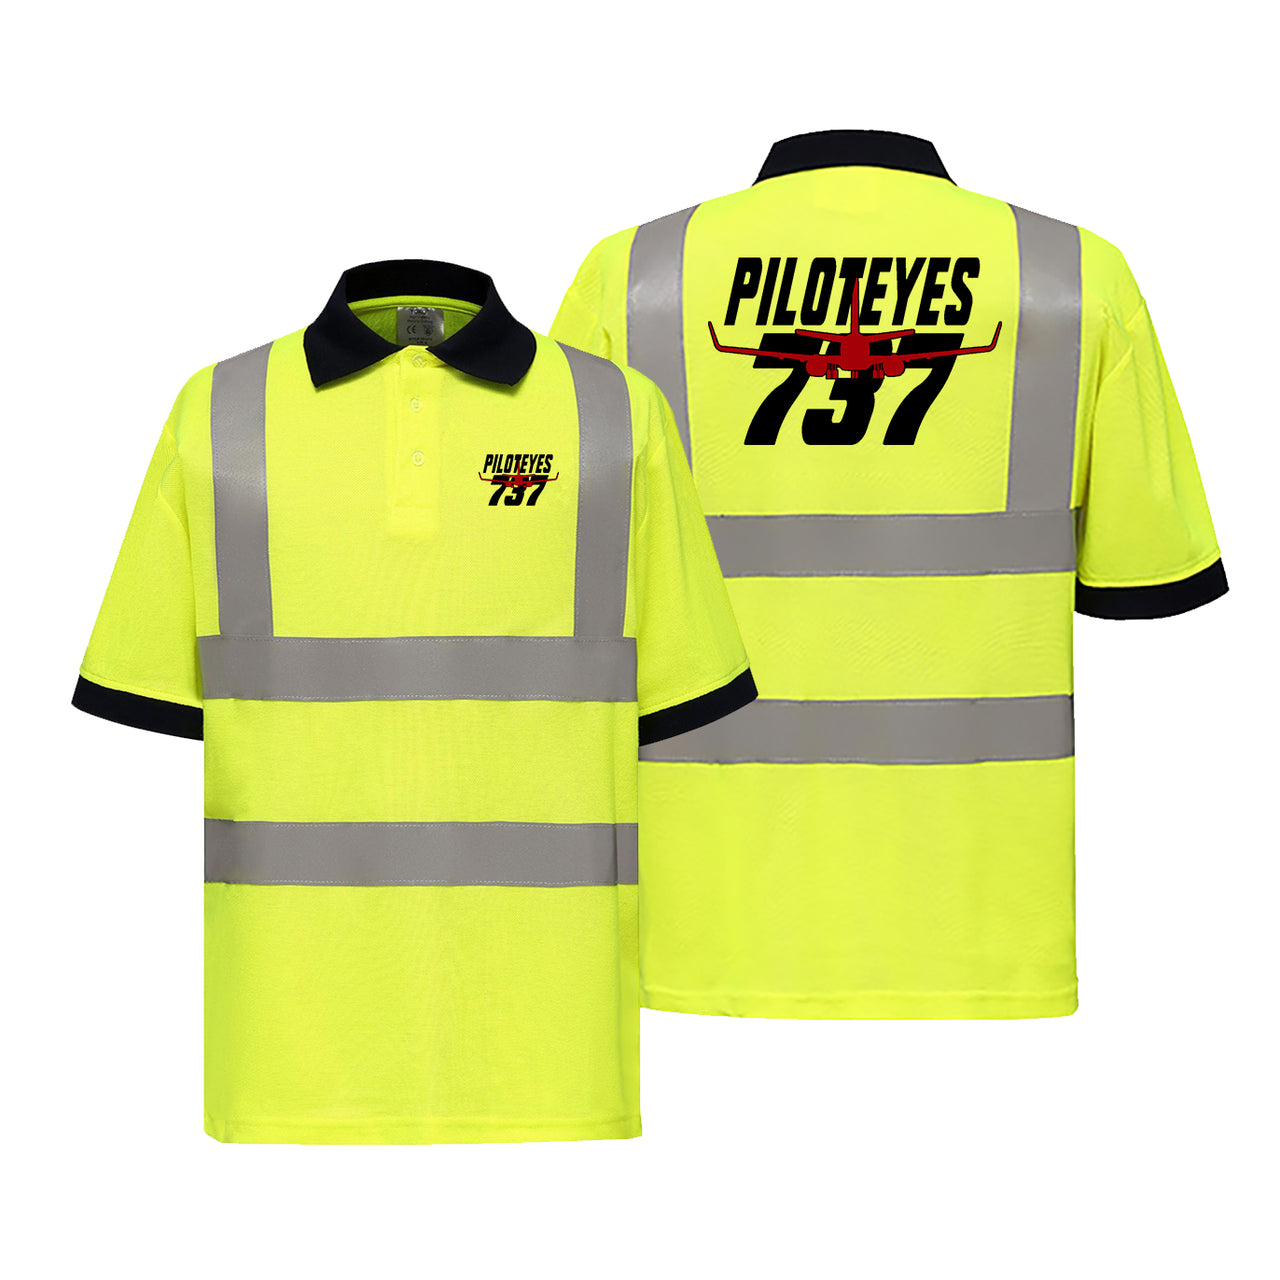 Amazing Piloteyes737 Designed Reflective Polo T-Shirts